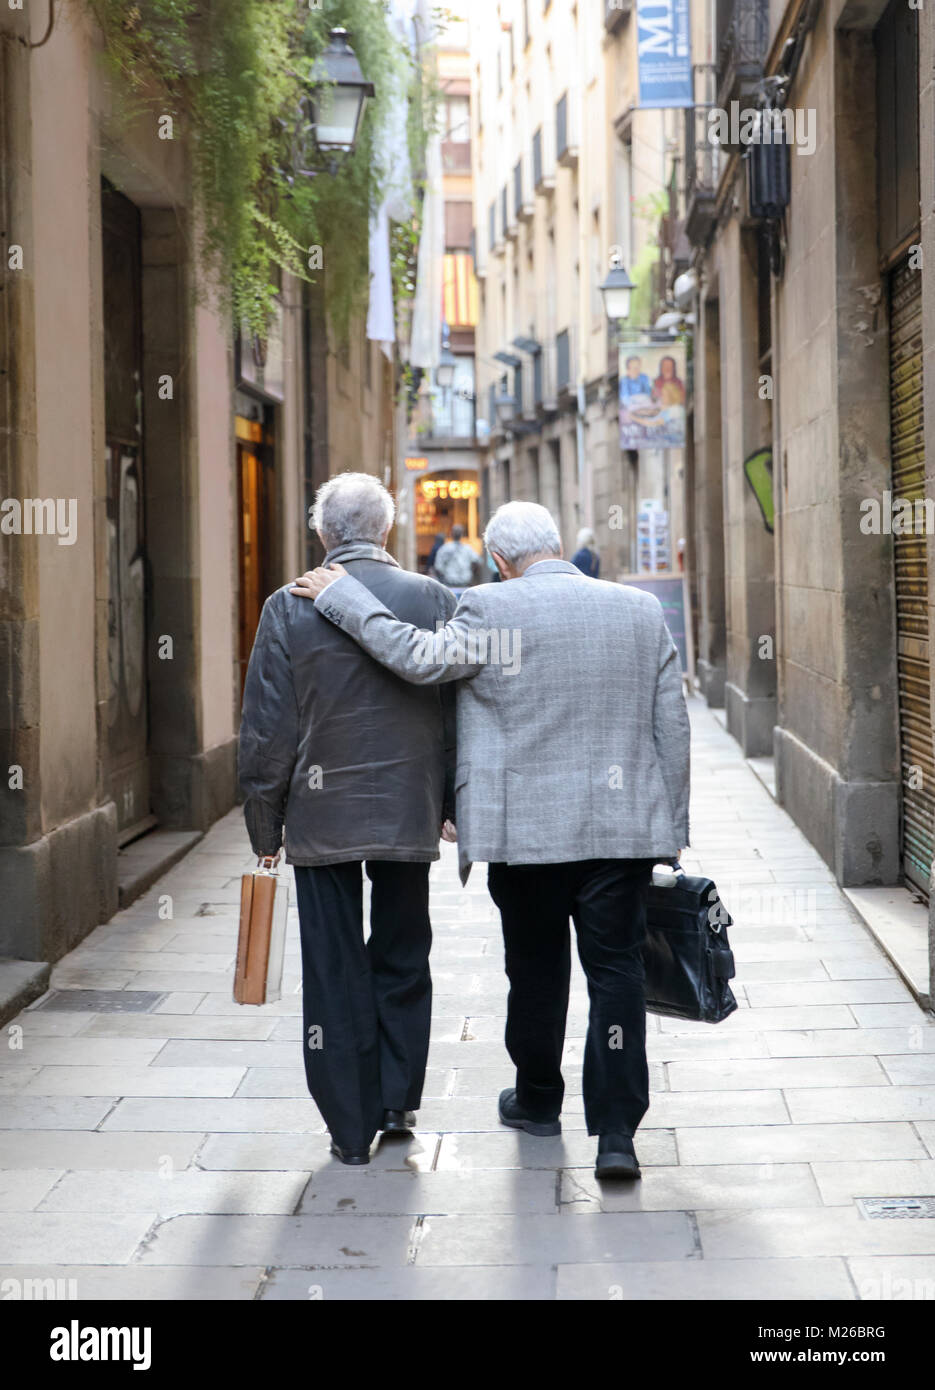 BARCELONA, SPANIEN: Zwei Freunde gehen in einer engen Straße in der Nachbarschaft von Barcelona. (Foto von Matt Mai/Alamy) Stockfoto